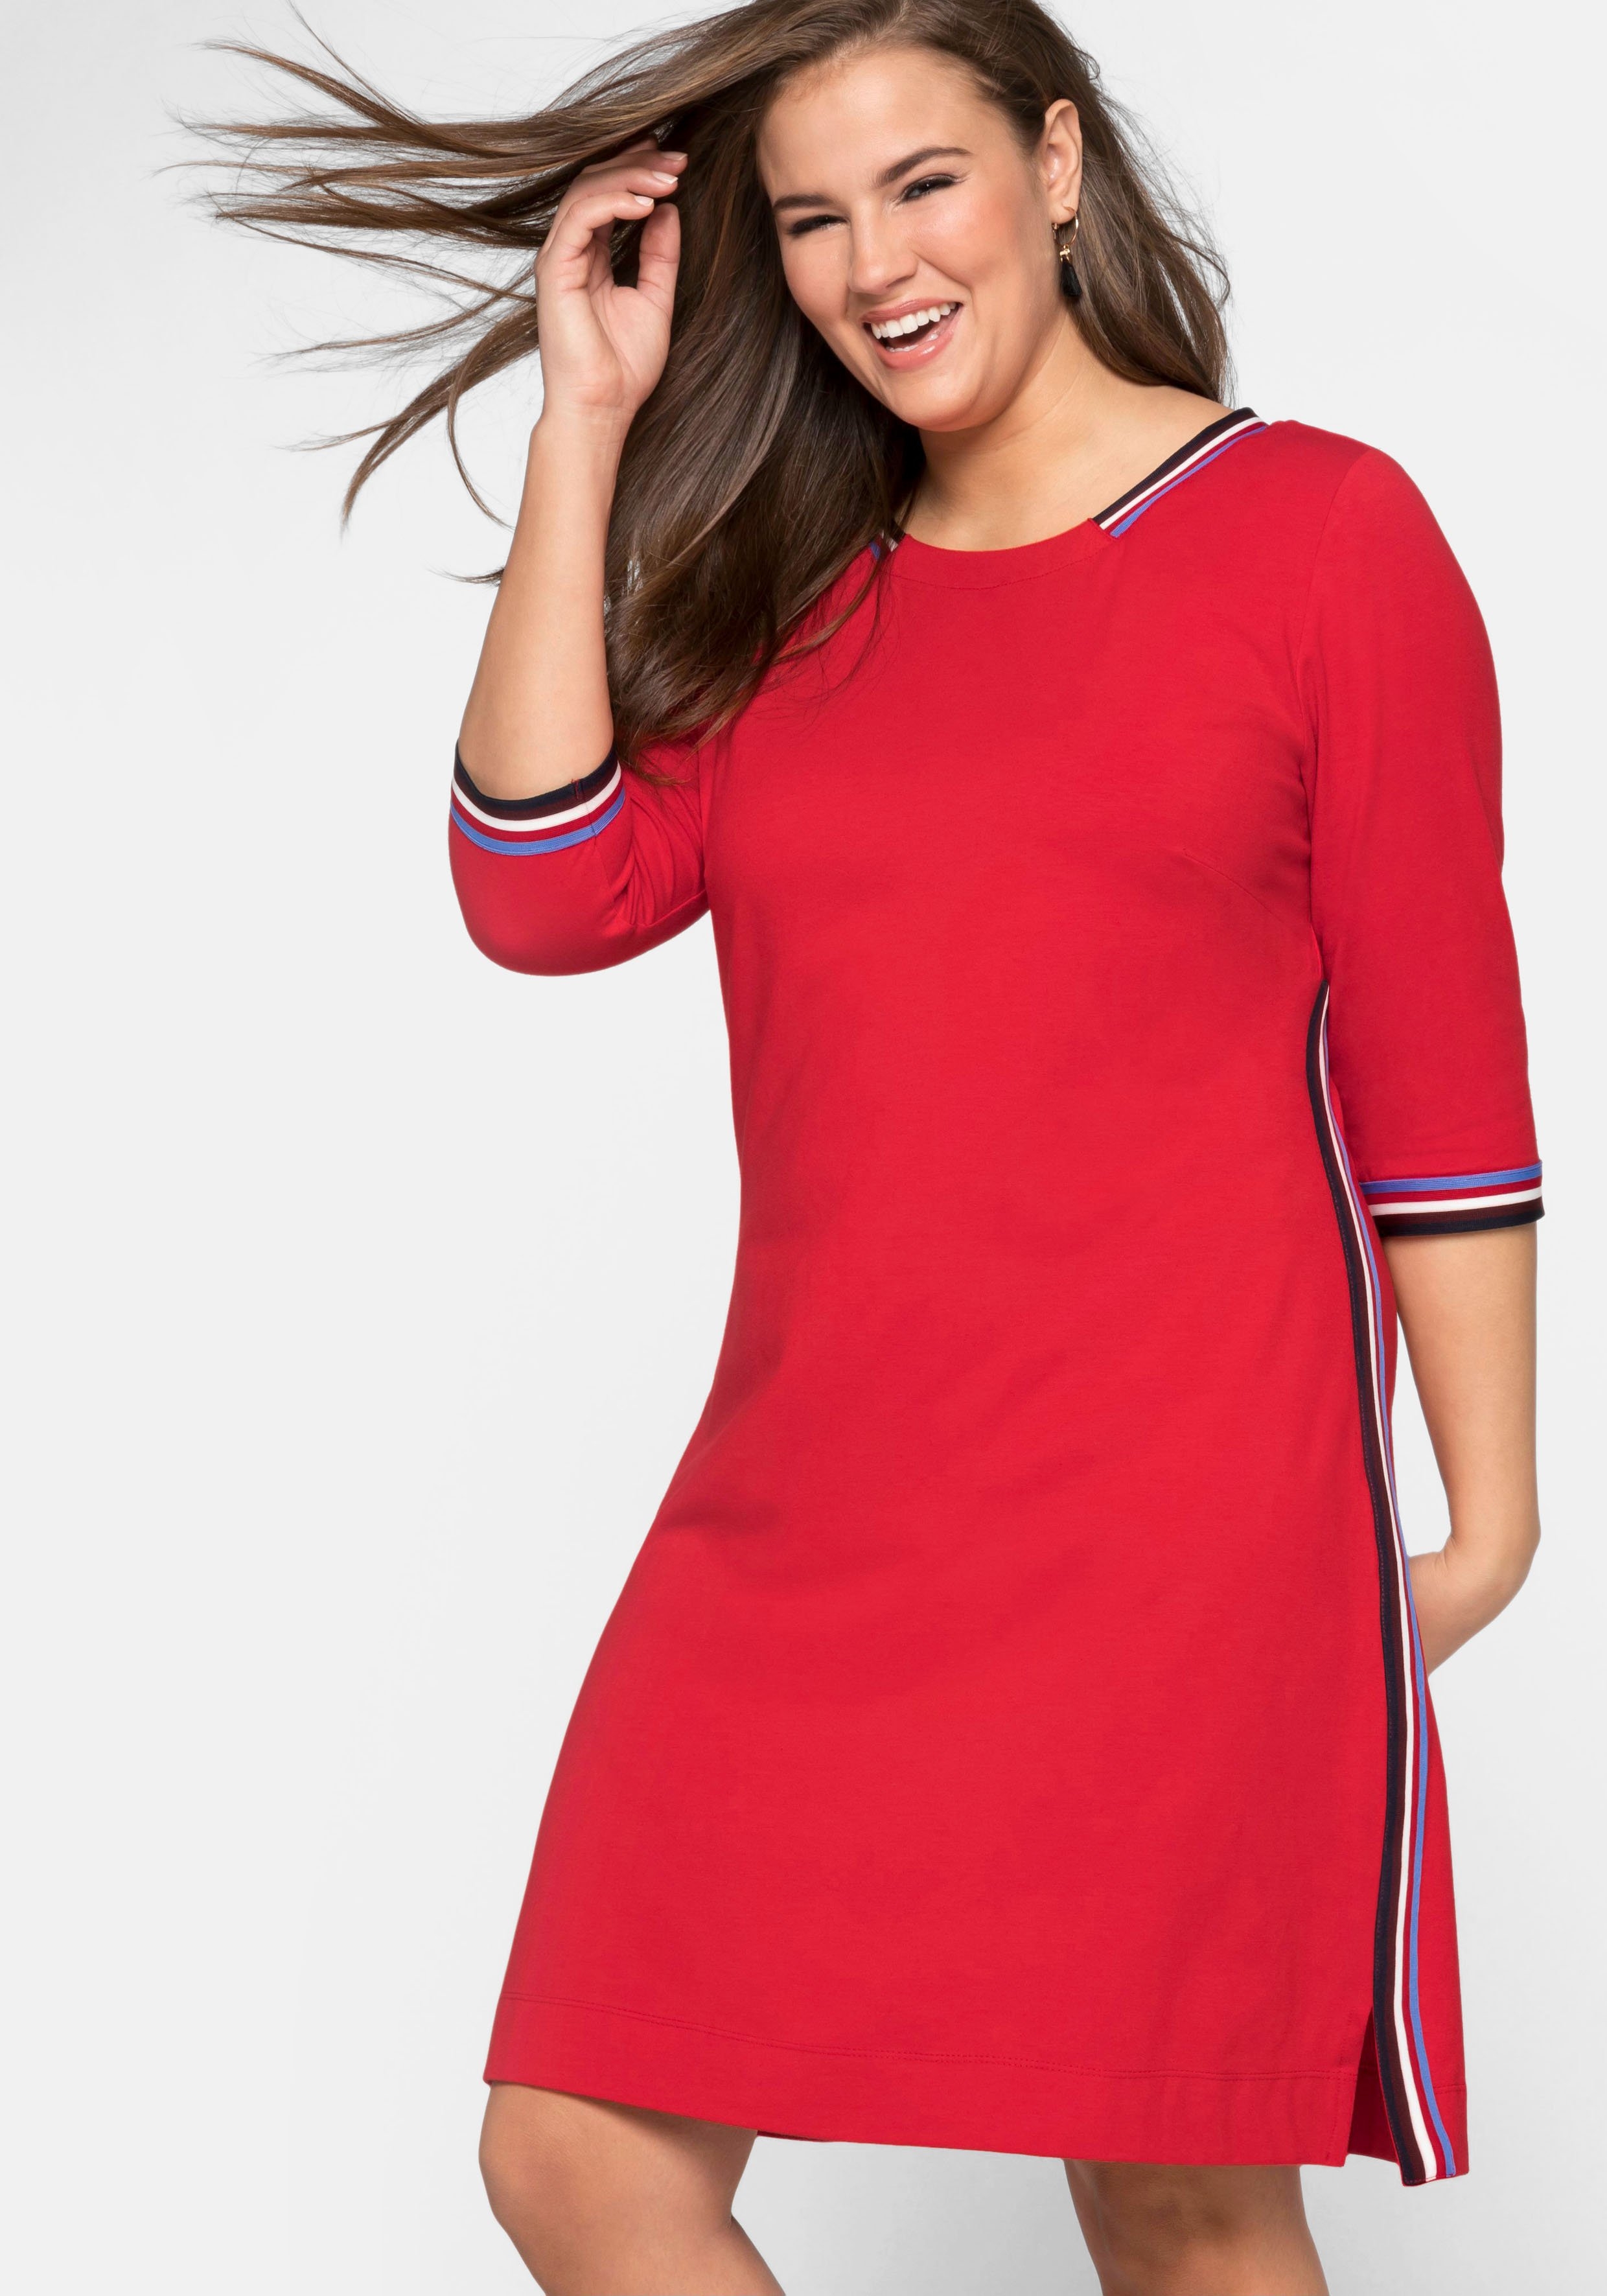 Wonderbaar Rode Jurken kopen? Bestel je favoriete jurk online | OTTO AN-98